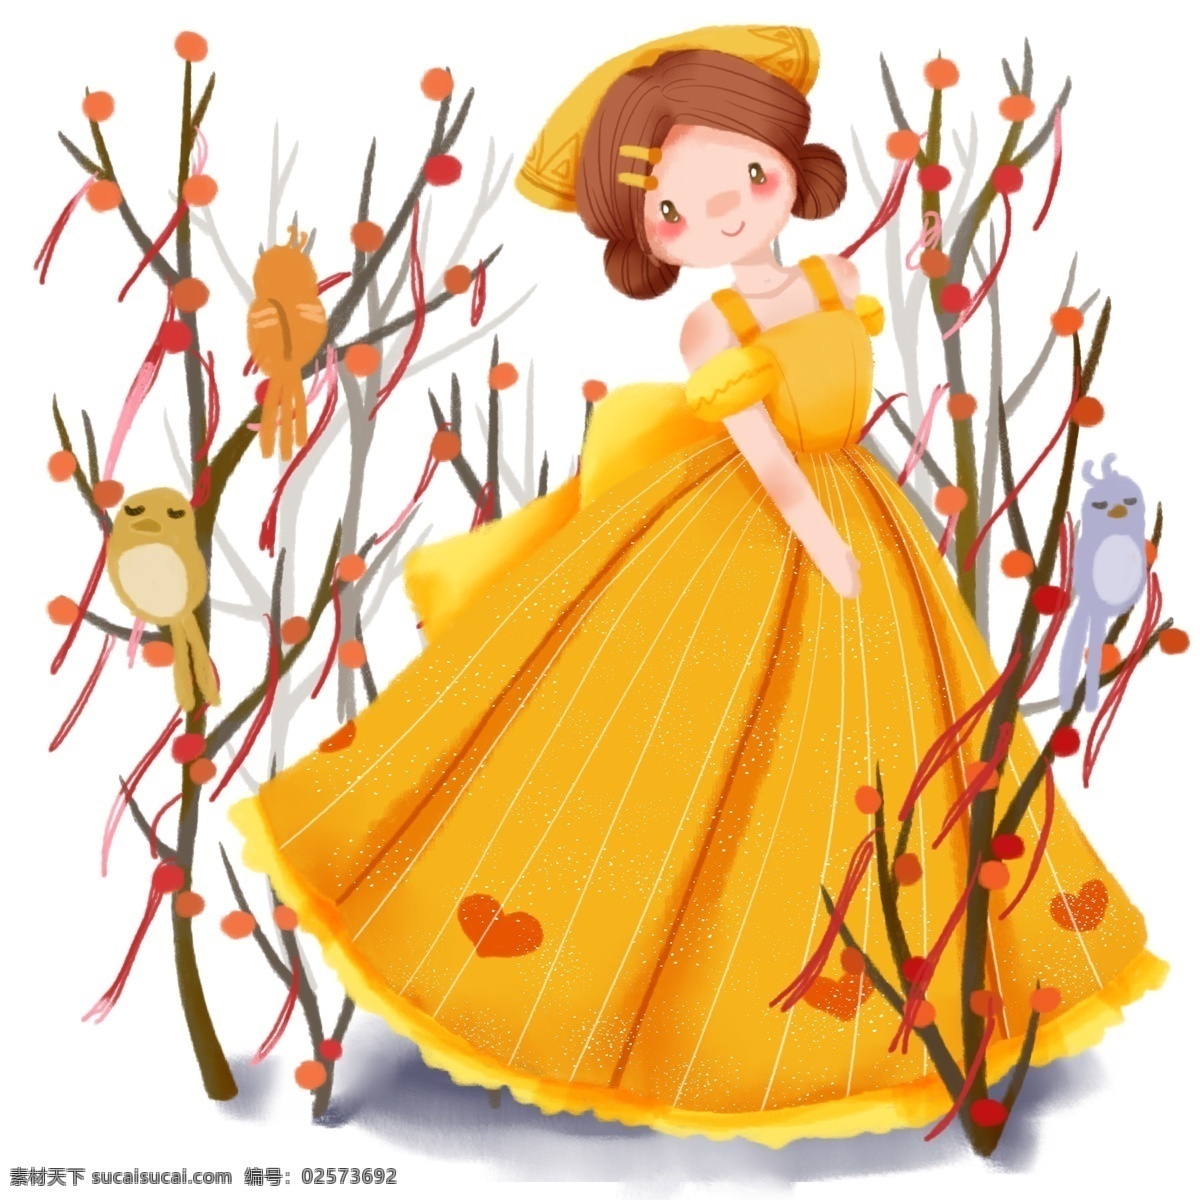 手绘 卡通 可爱 少女 黄色 裙子 秋天 植物 果子 小鸟 女孩 小女孩 森林 橙色 橙黄 舞蹈 起舞